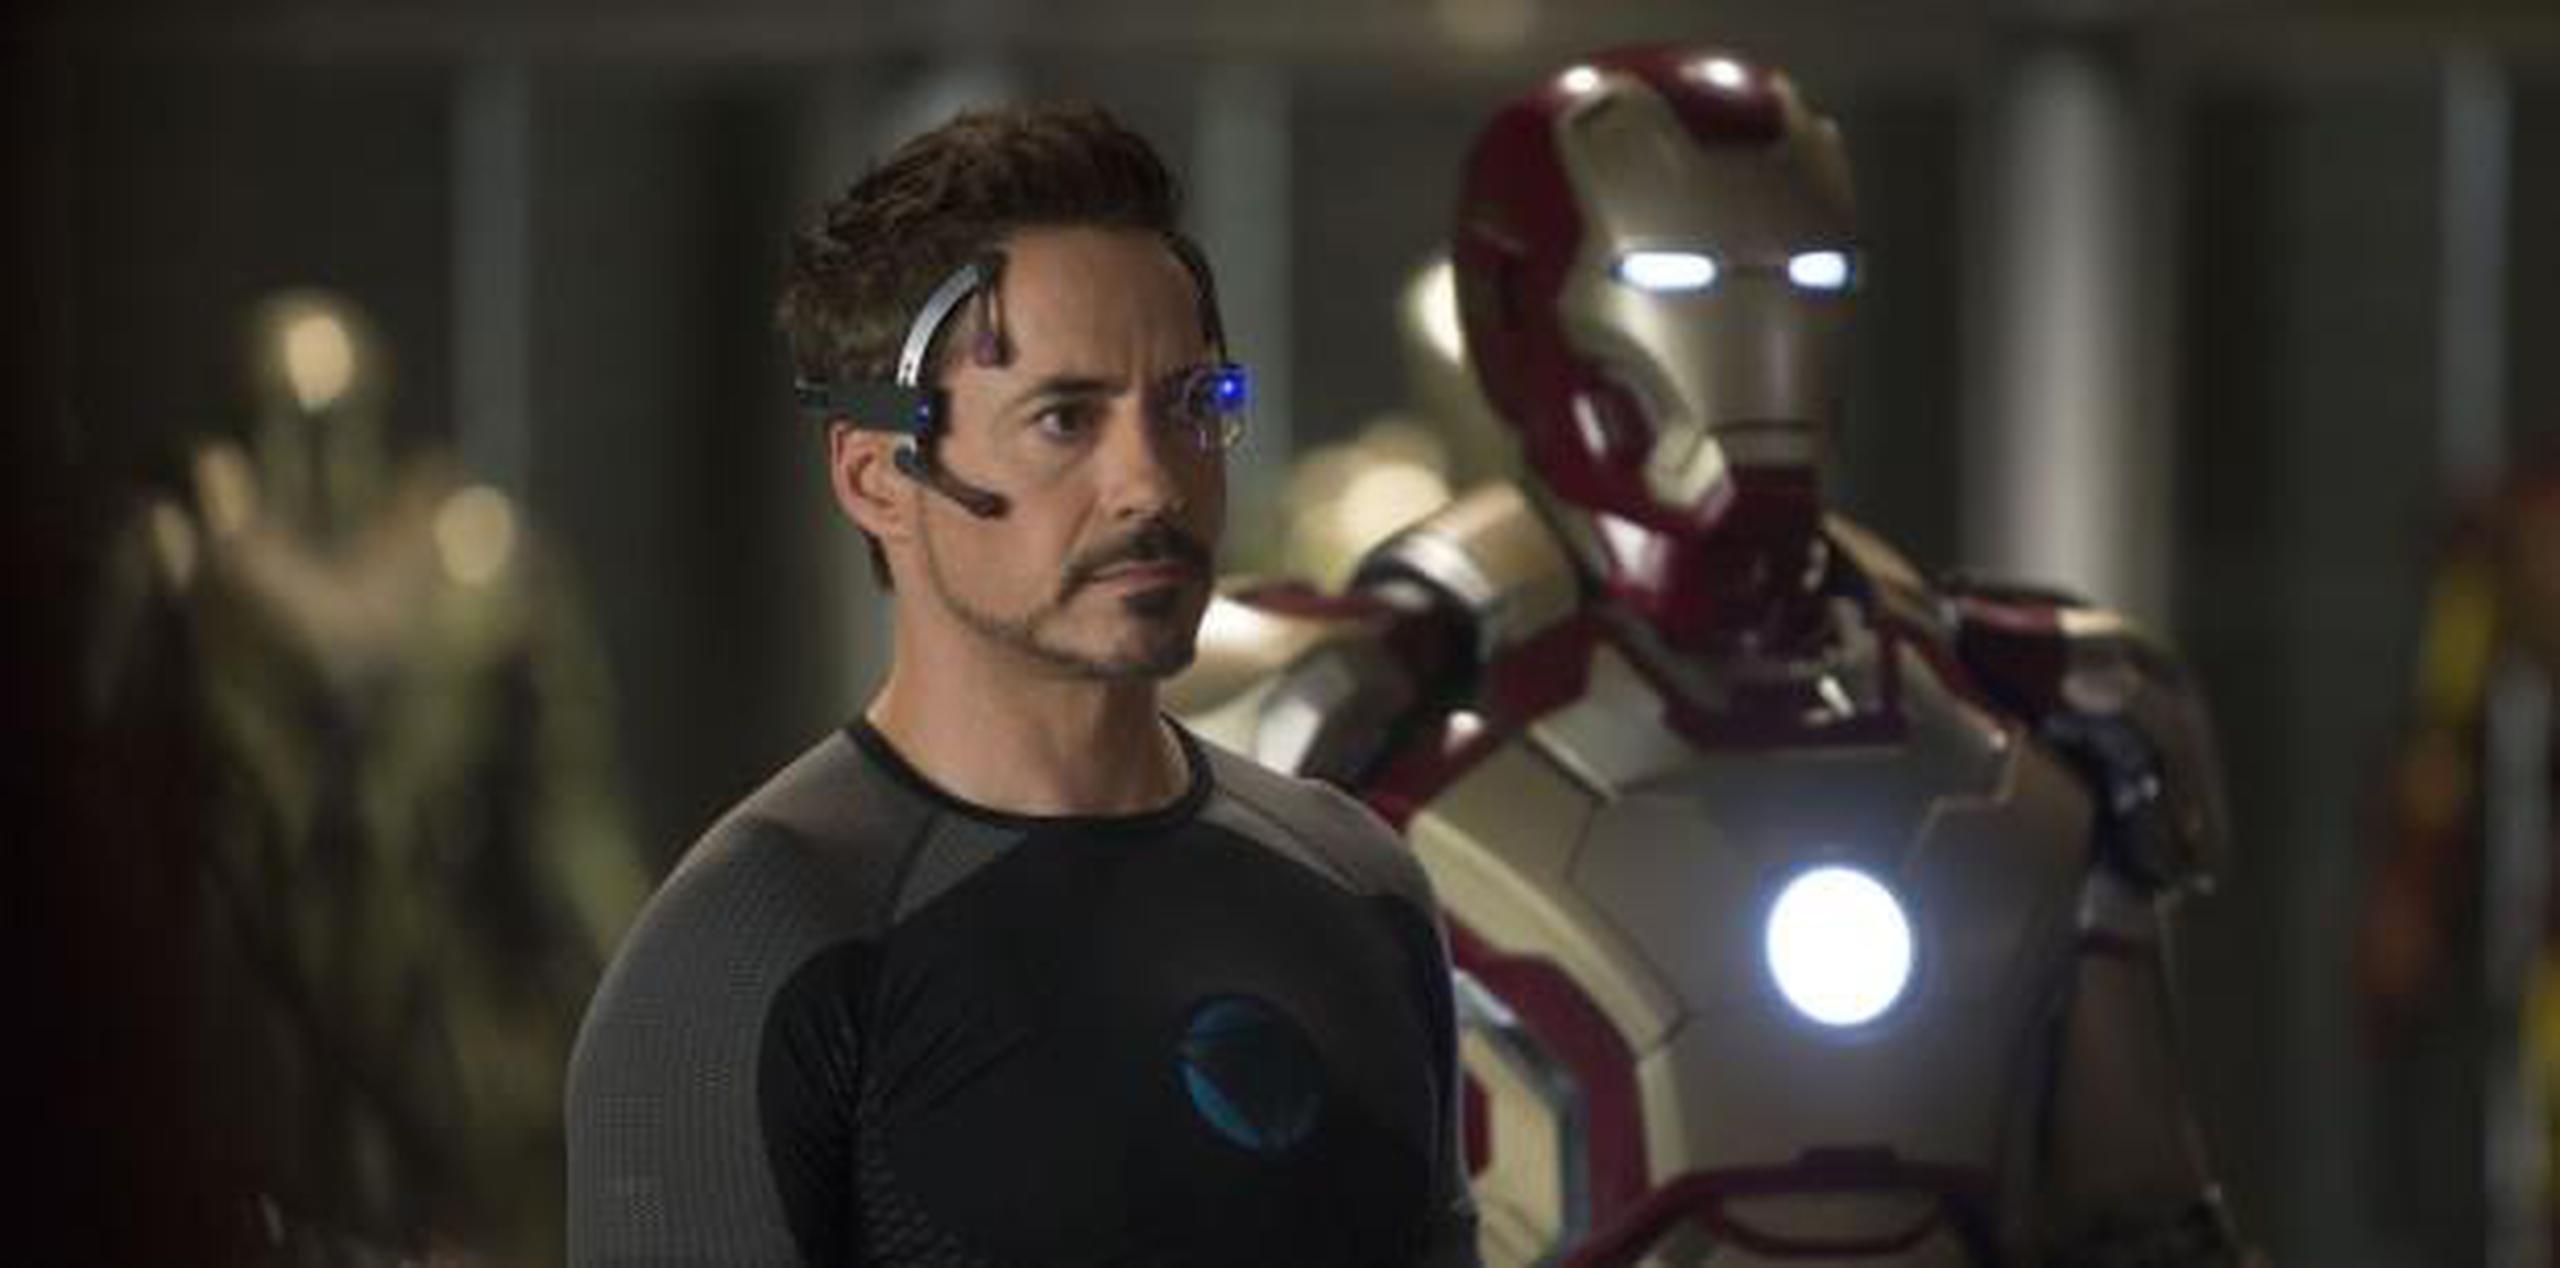 El personaje de Iron Man fue interpretado durante años por el actor estadounidense Robert Downey Jr. (Archivo)